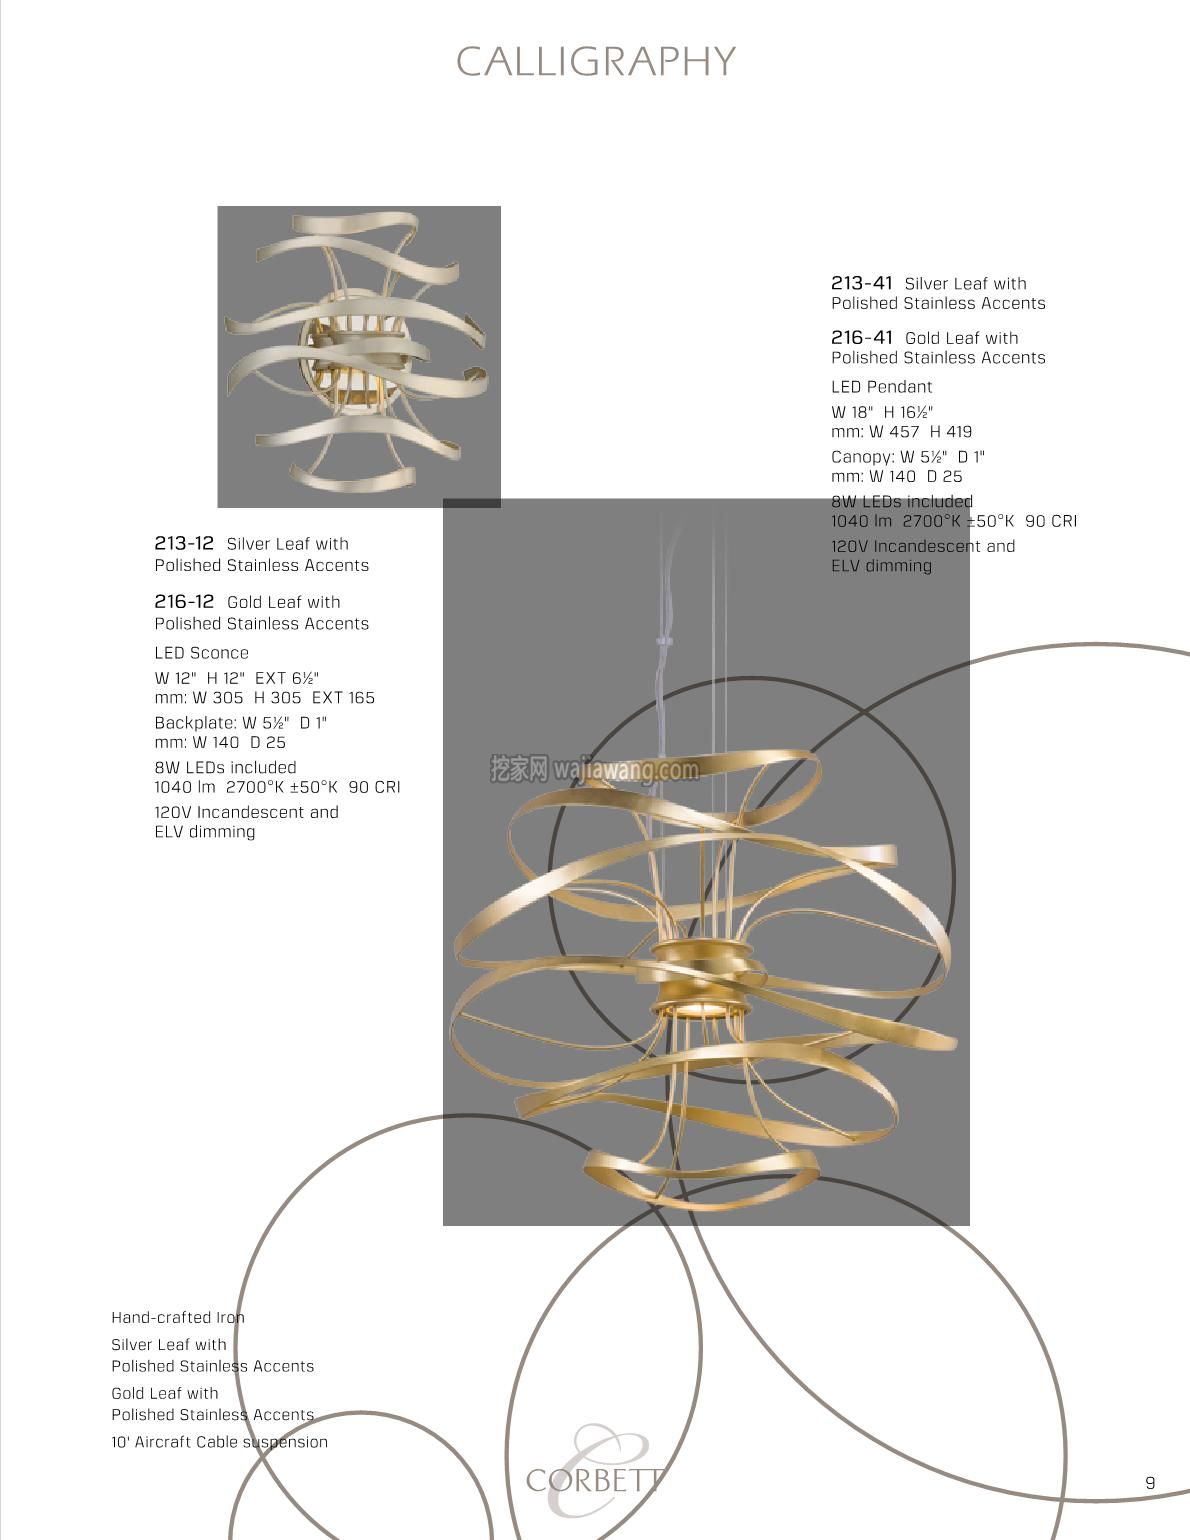 灯饰设计 创意吊灯设计 Corbett 2016(图)